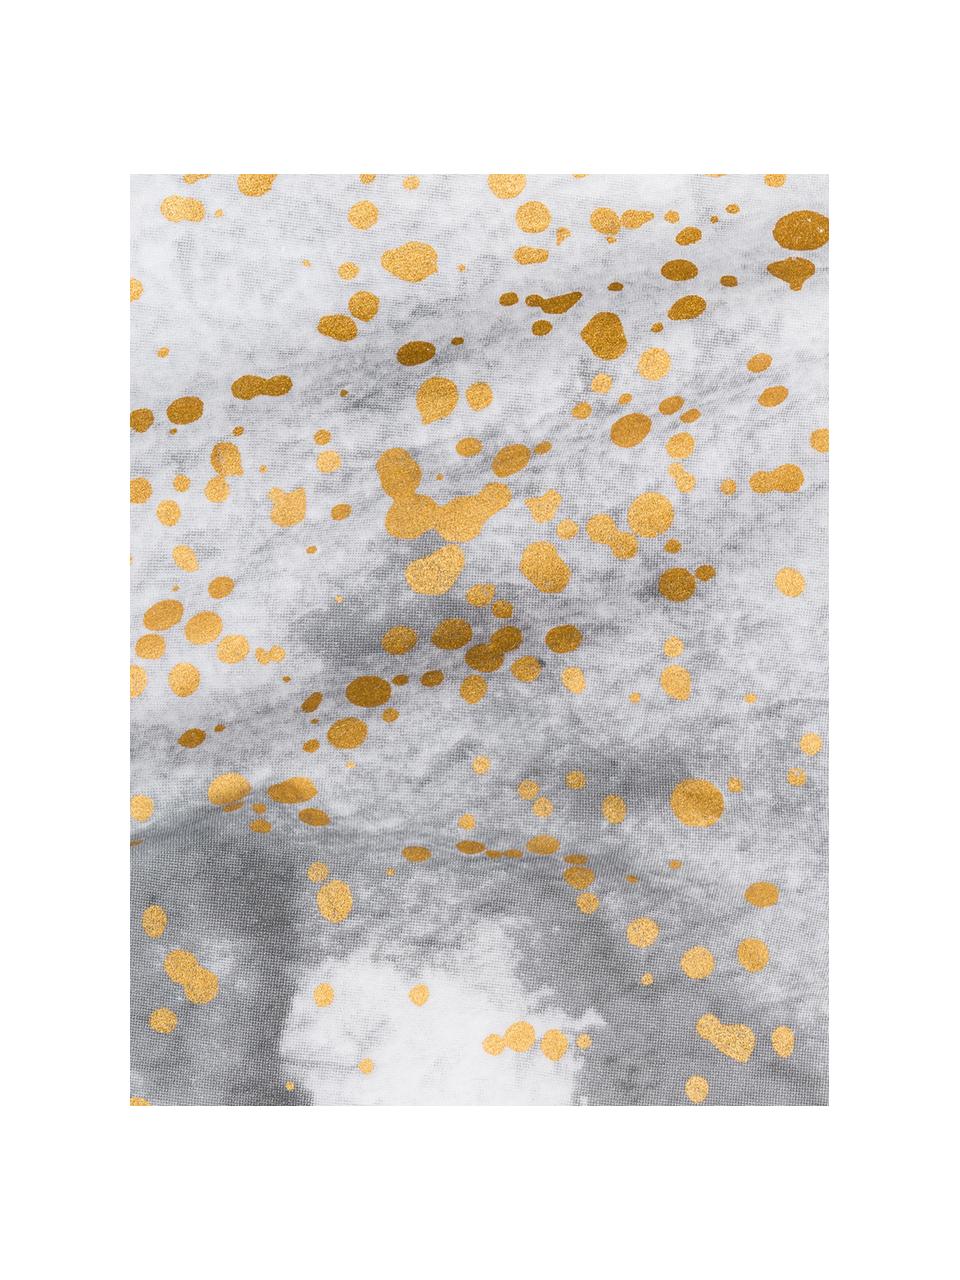 Baumwoll-Bettwäsche Touch of Gold mit Aquarell Print, 100% Baumwolle
  
Fadendichte 145 TC, Standard Qualität
  
Bettwäsche aus Baumwolle fühlt sich auf der Haut angenehm weich an, nimmt Feuchtigkeit gut auf und eignet sich für Allergiker., Weiß, Grau, Goldfarben, 155 x 220 cm + 1 Kissen 80 x 80 cm